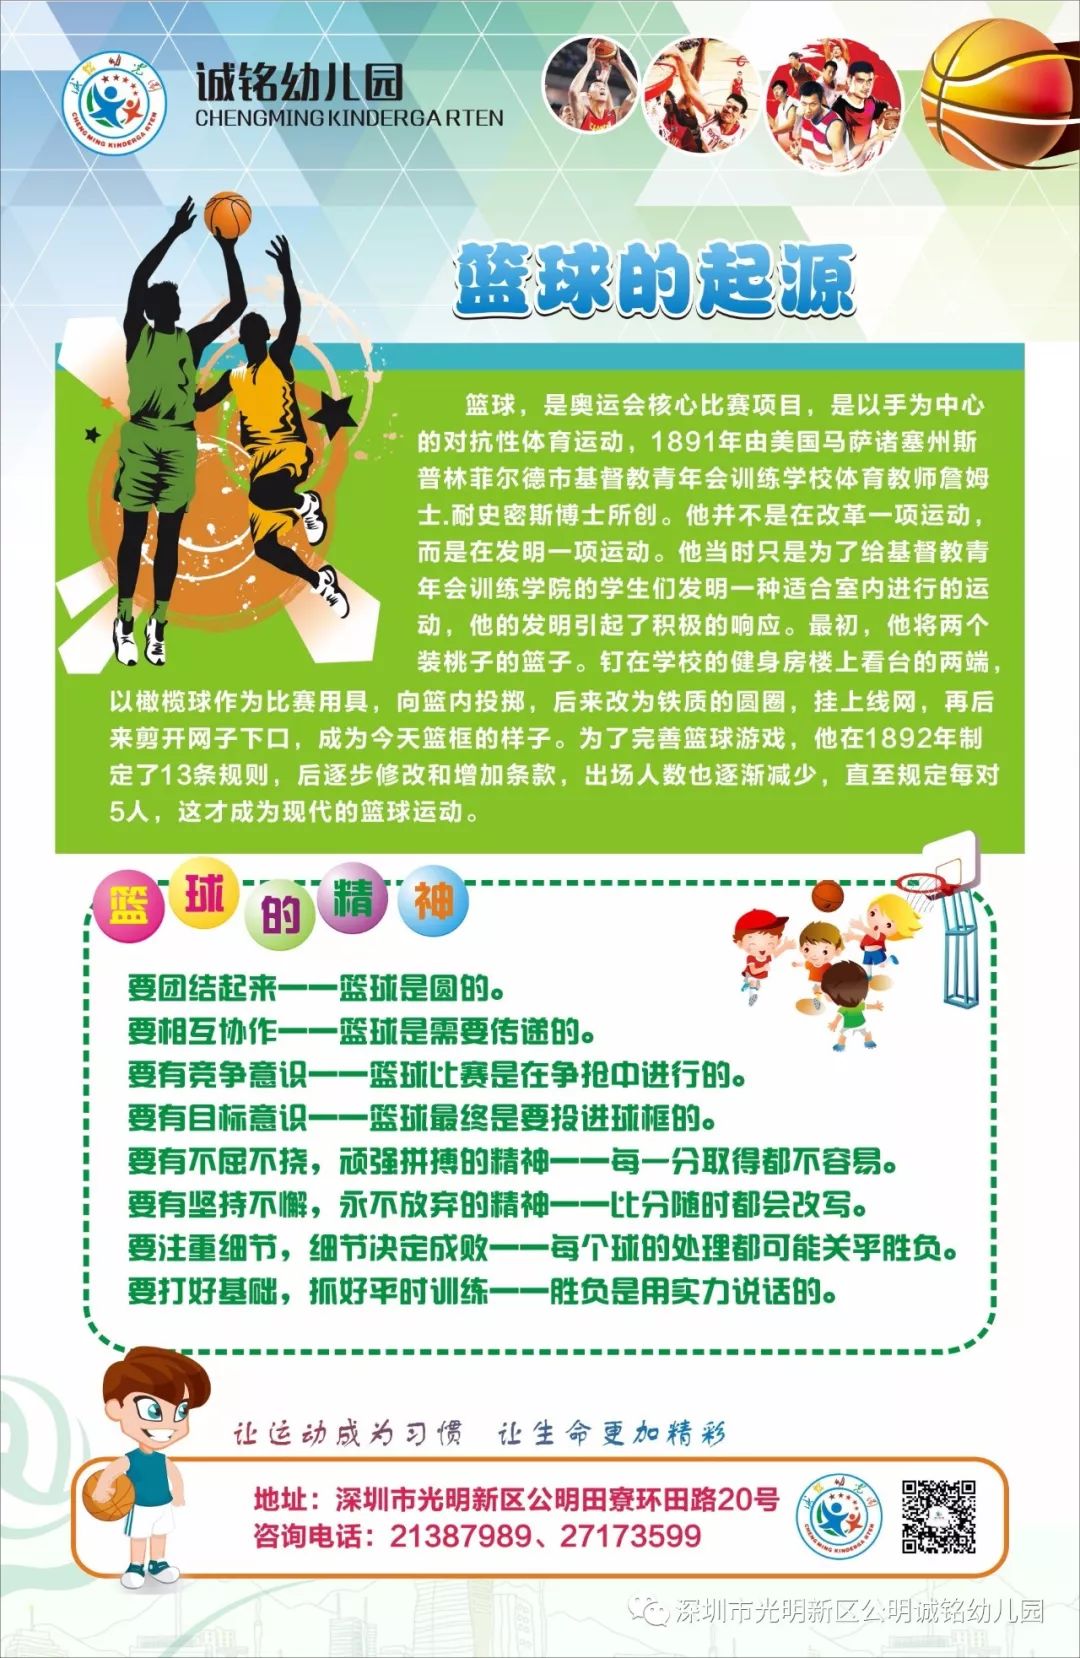 小将参加了华蒙星深圳赛区第二届全国幼儿篮球联赛,比赛在深圳市